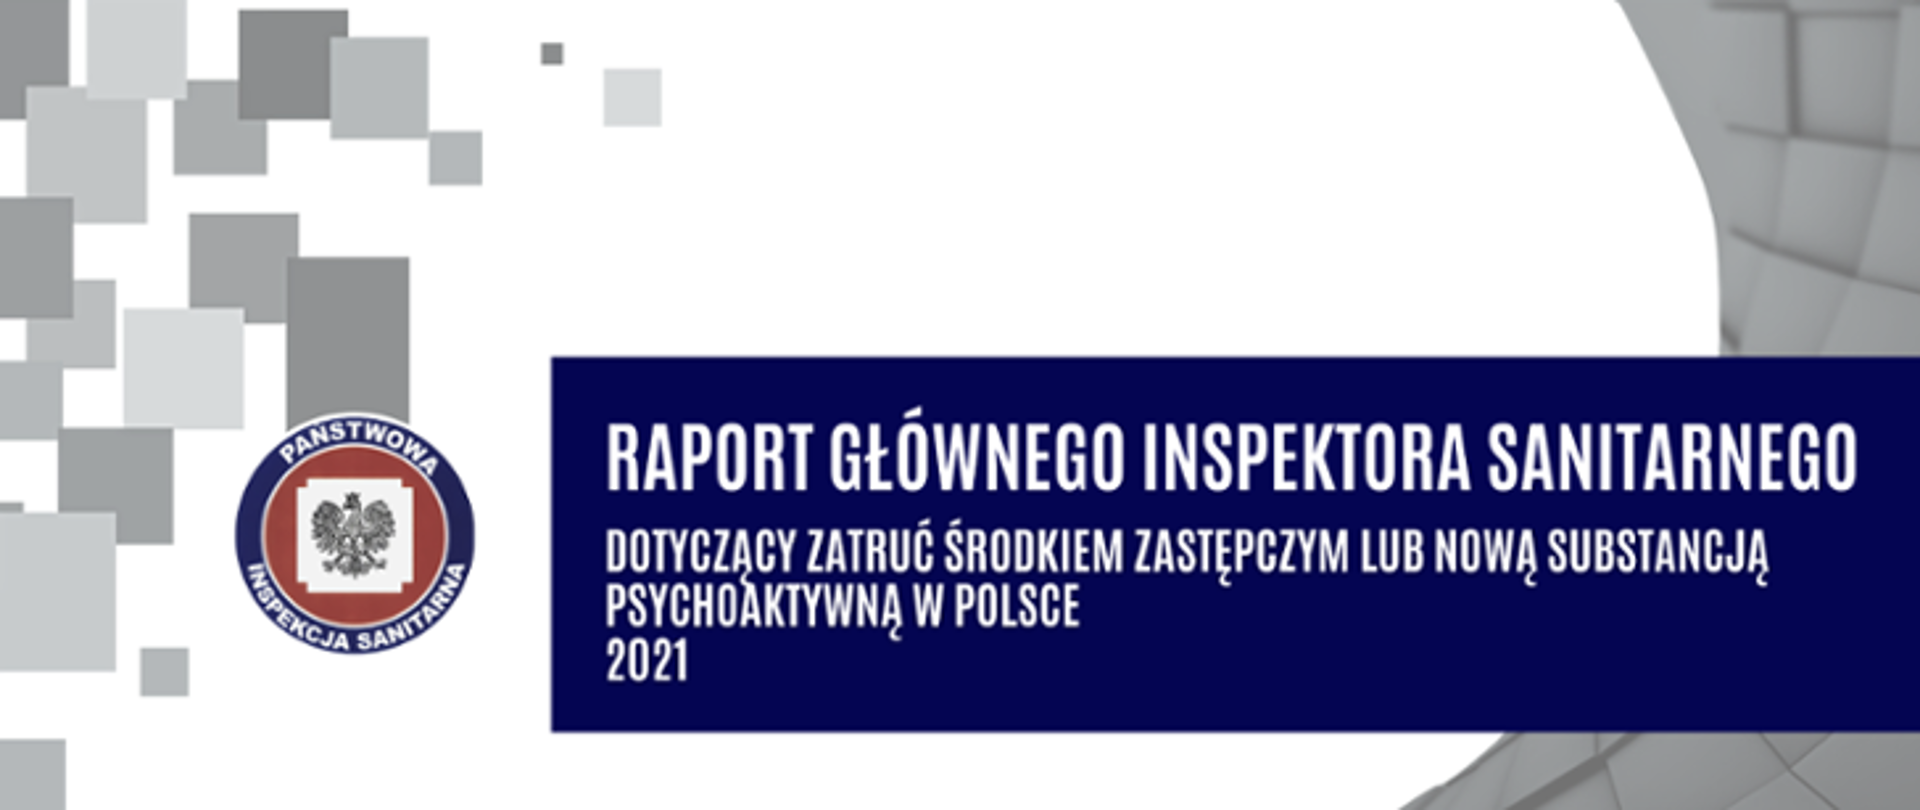 Na grafice znajduje się biały napis na granatowym tle Raport Głównego Inspektora Sanitarnego dotyczący zatruć środkiem zastępczym lub nową substancją psychoaktywną w Polsce za 2021 rok. Z lewej strony logo inspekcji sanitarnej